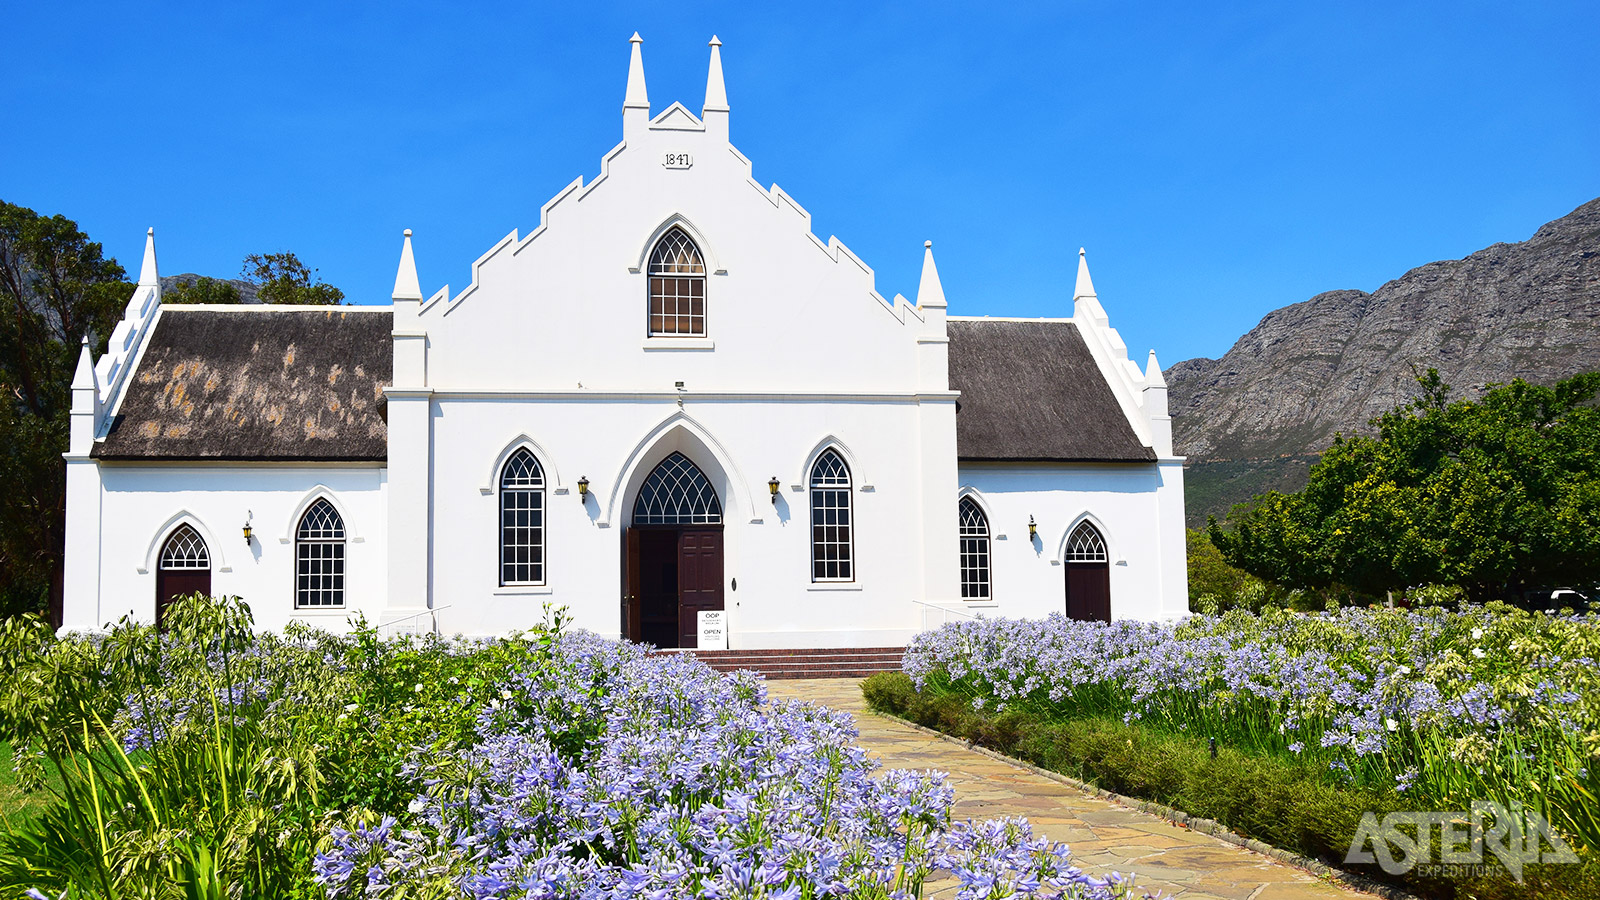 Je bezoekt de befaamde wijnlanden rond Paarl, Stellenbosch en Franschhoek met typisch Kaaps-Hollandse huizen uit de 17de en 18de eeuw